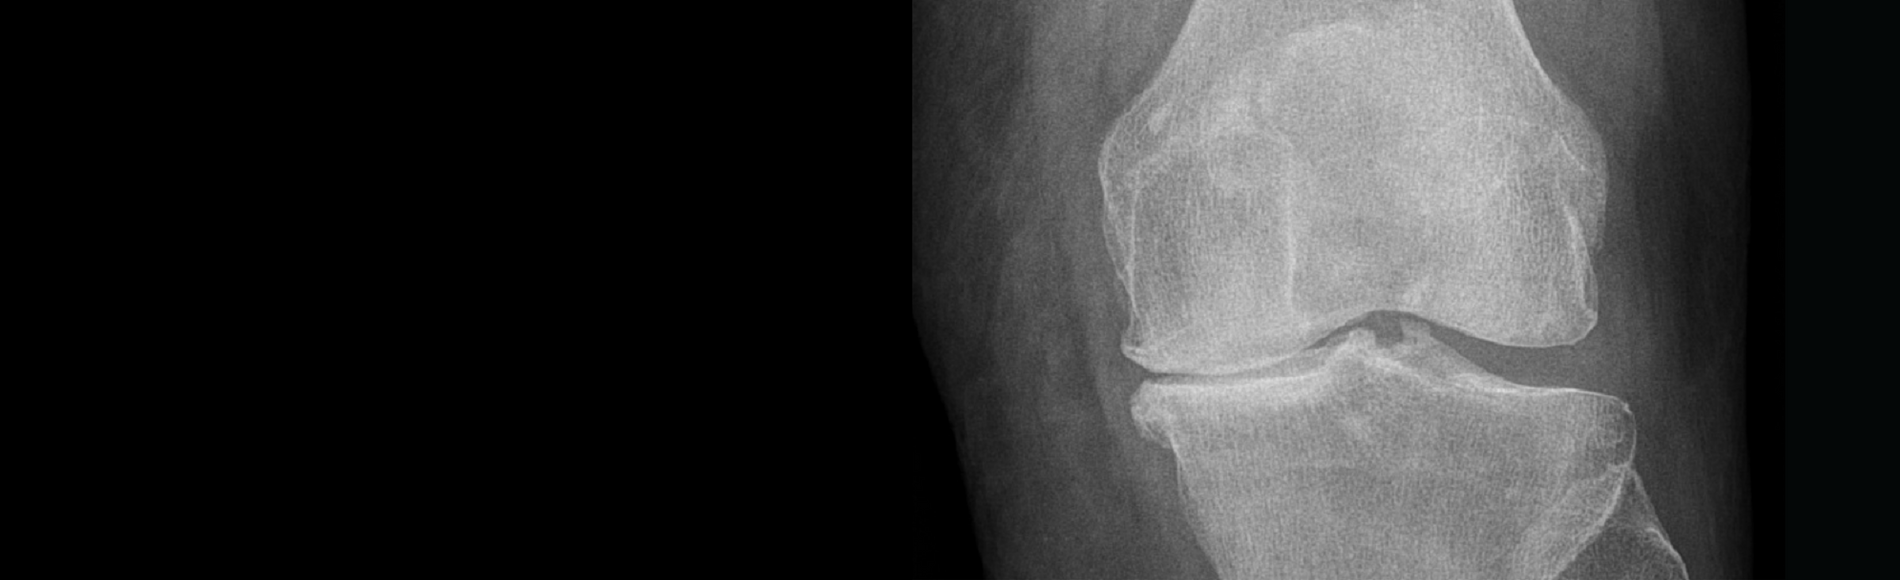 Knee Osteoarthritis (OA)